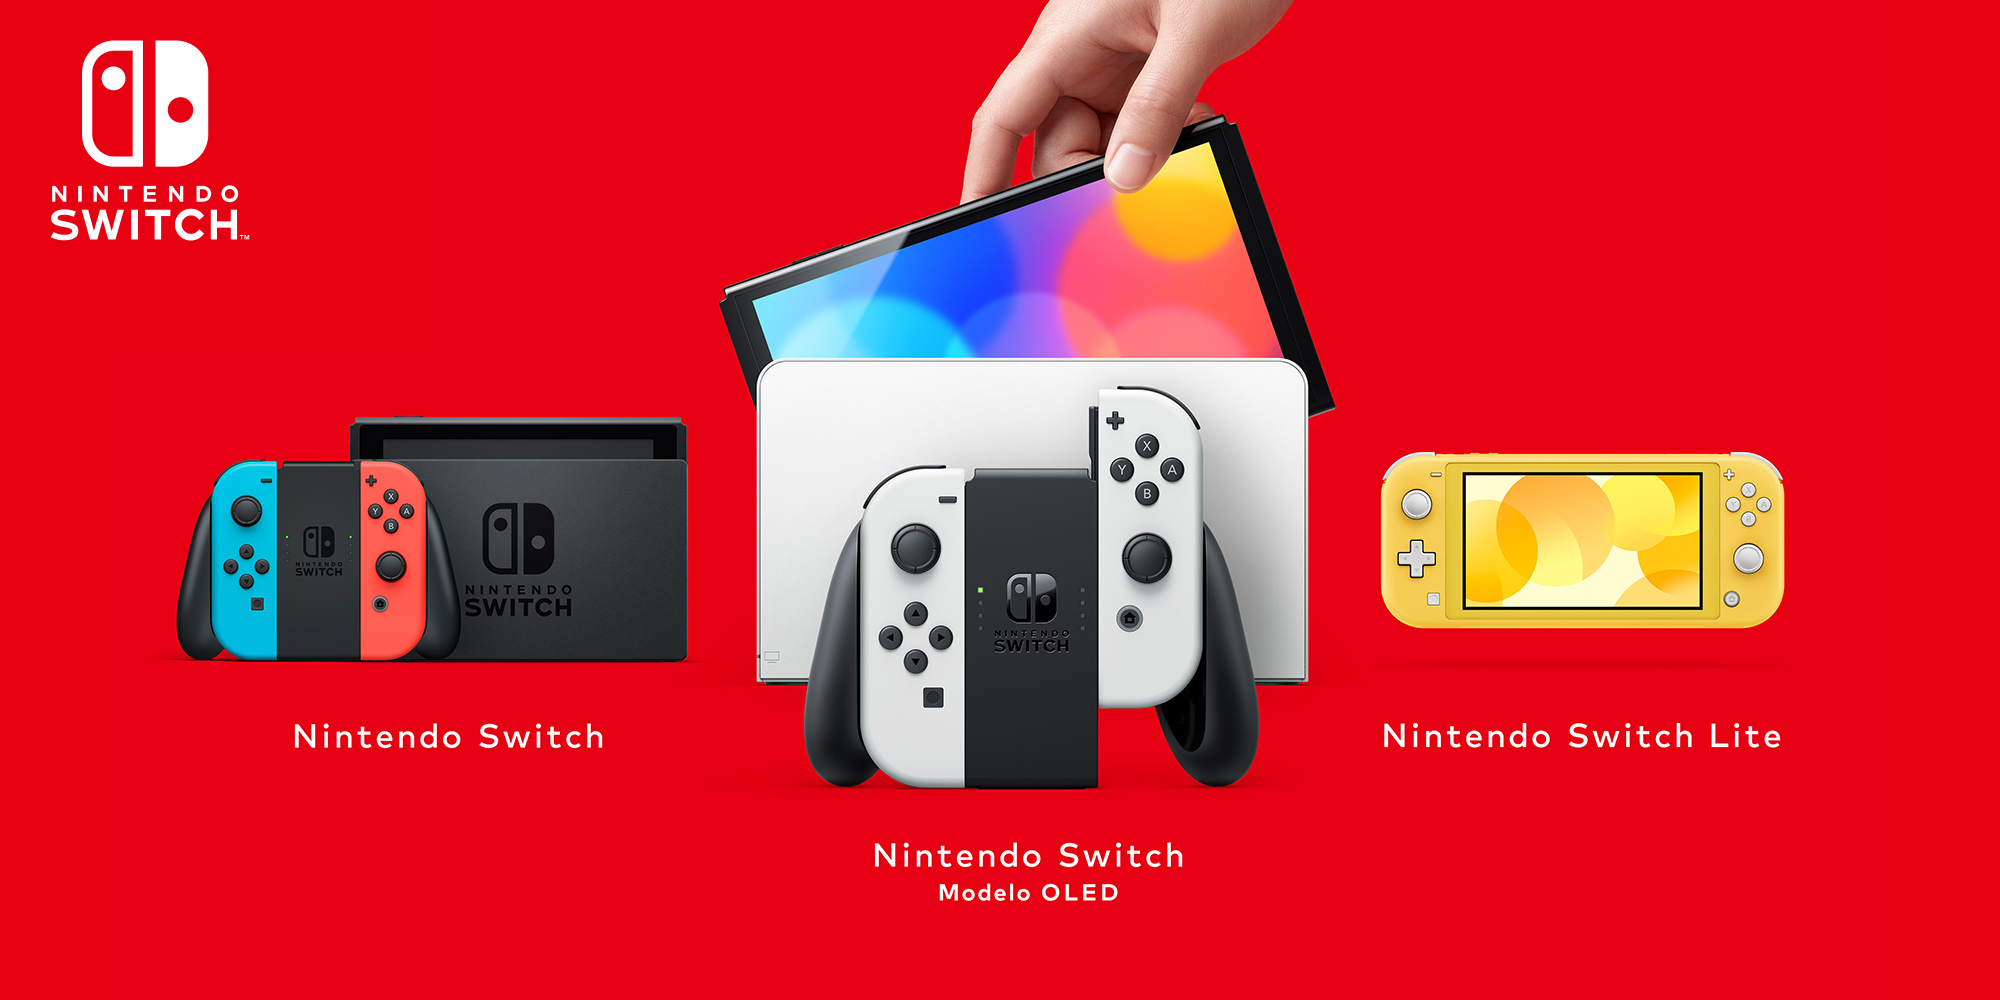 ¿Estrenas una consola Nintendo Switch? ¡No te pierdas estas funciones y sugerencias!